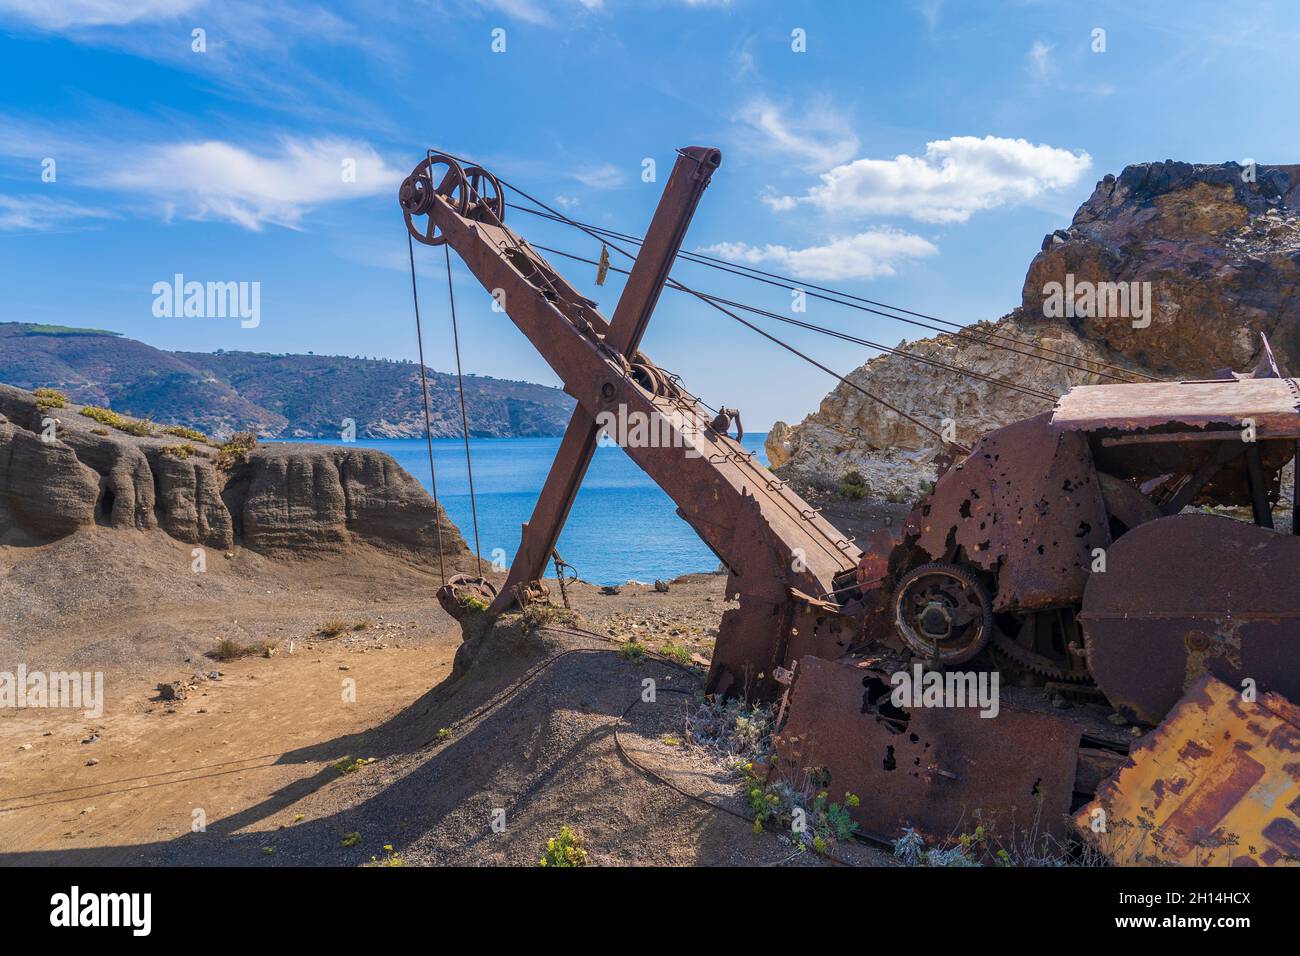 Nette aktive Frau, die ihr elektrisches Mountainbike in den verlassenen Eisenerzminen der Halbinsel Calamite auf der Insel Elba, Toskanischer Archipel, T reitet Stockfoto